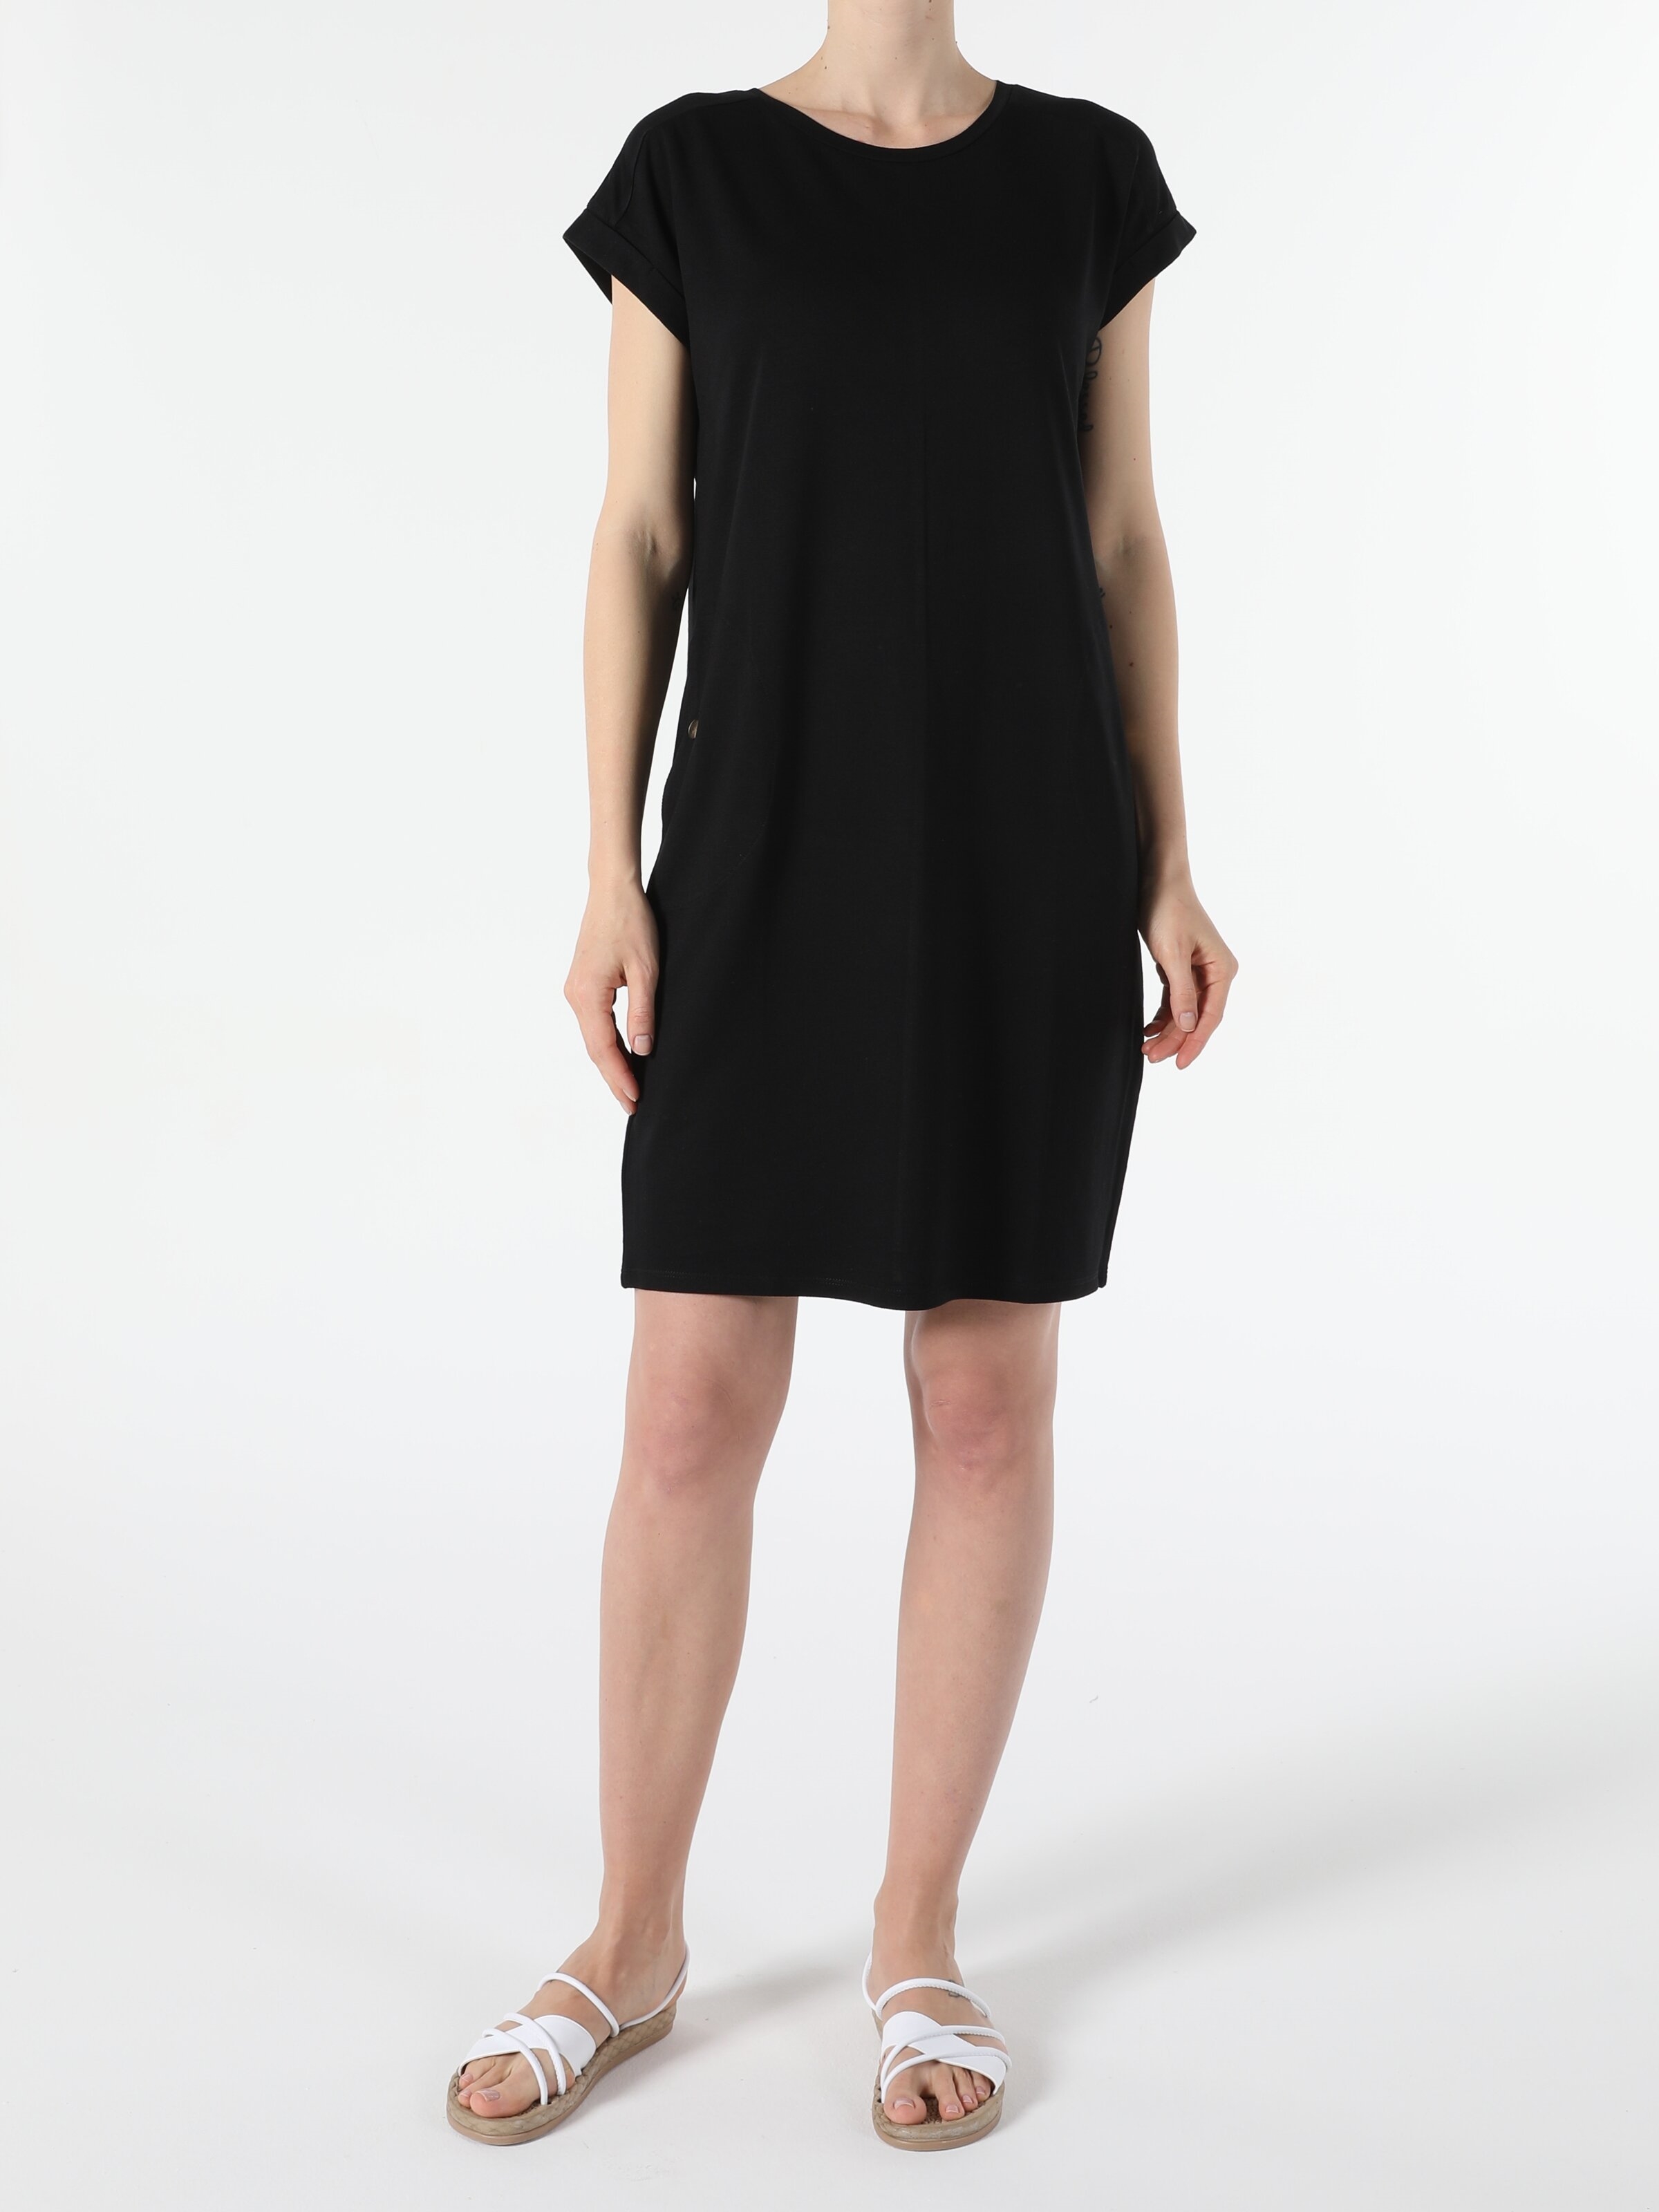 Показати інформацію про Сукня Жіноча Чорна Класичного Крою Cl1050596